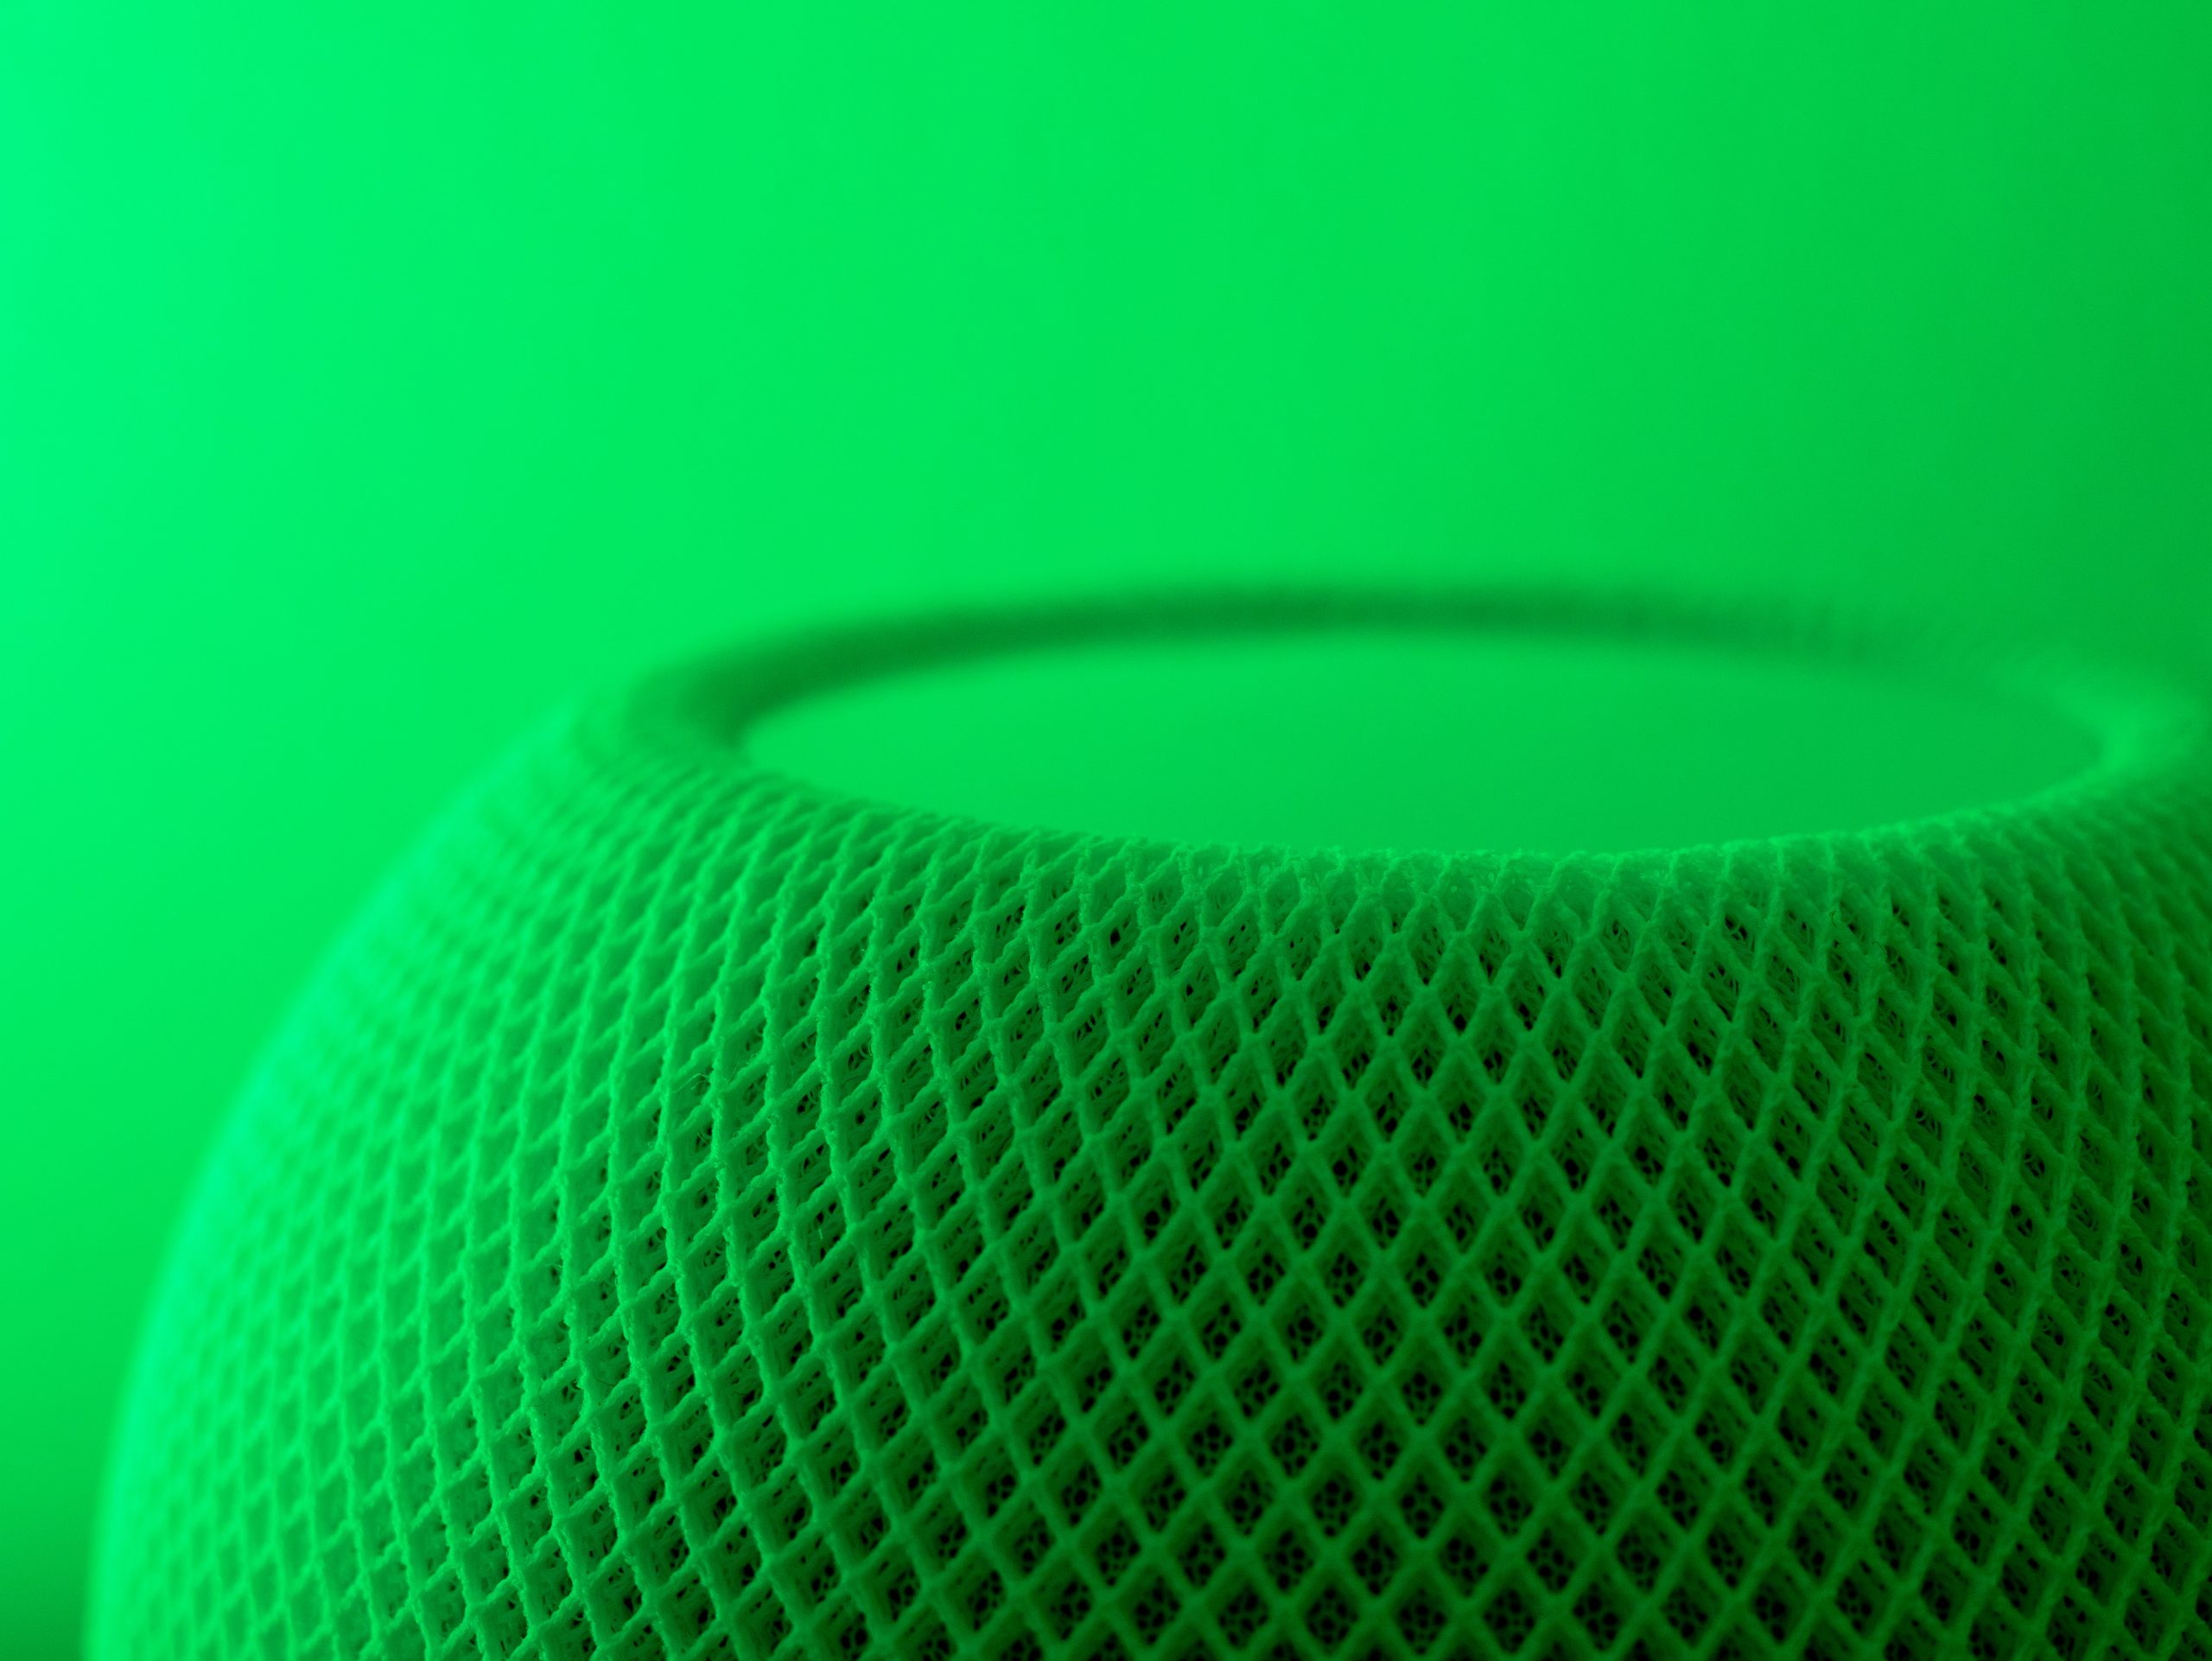 Detalle de un micrófono verde sobre un fondo del mismo color